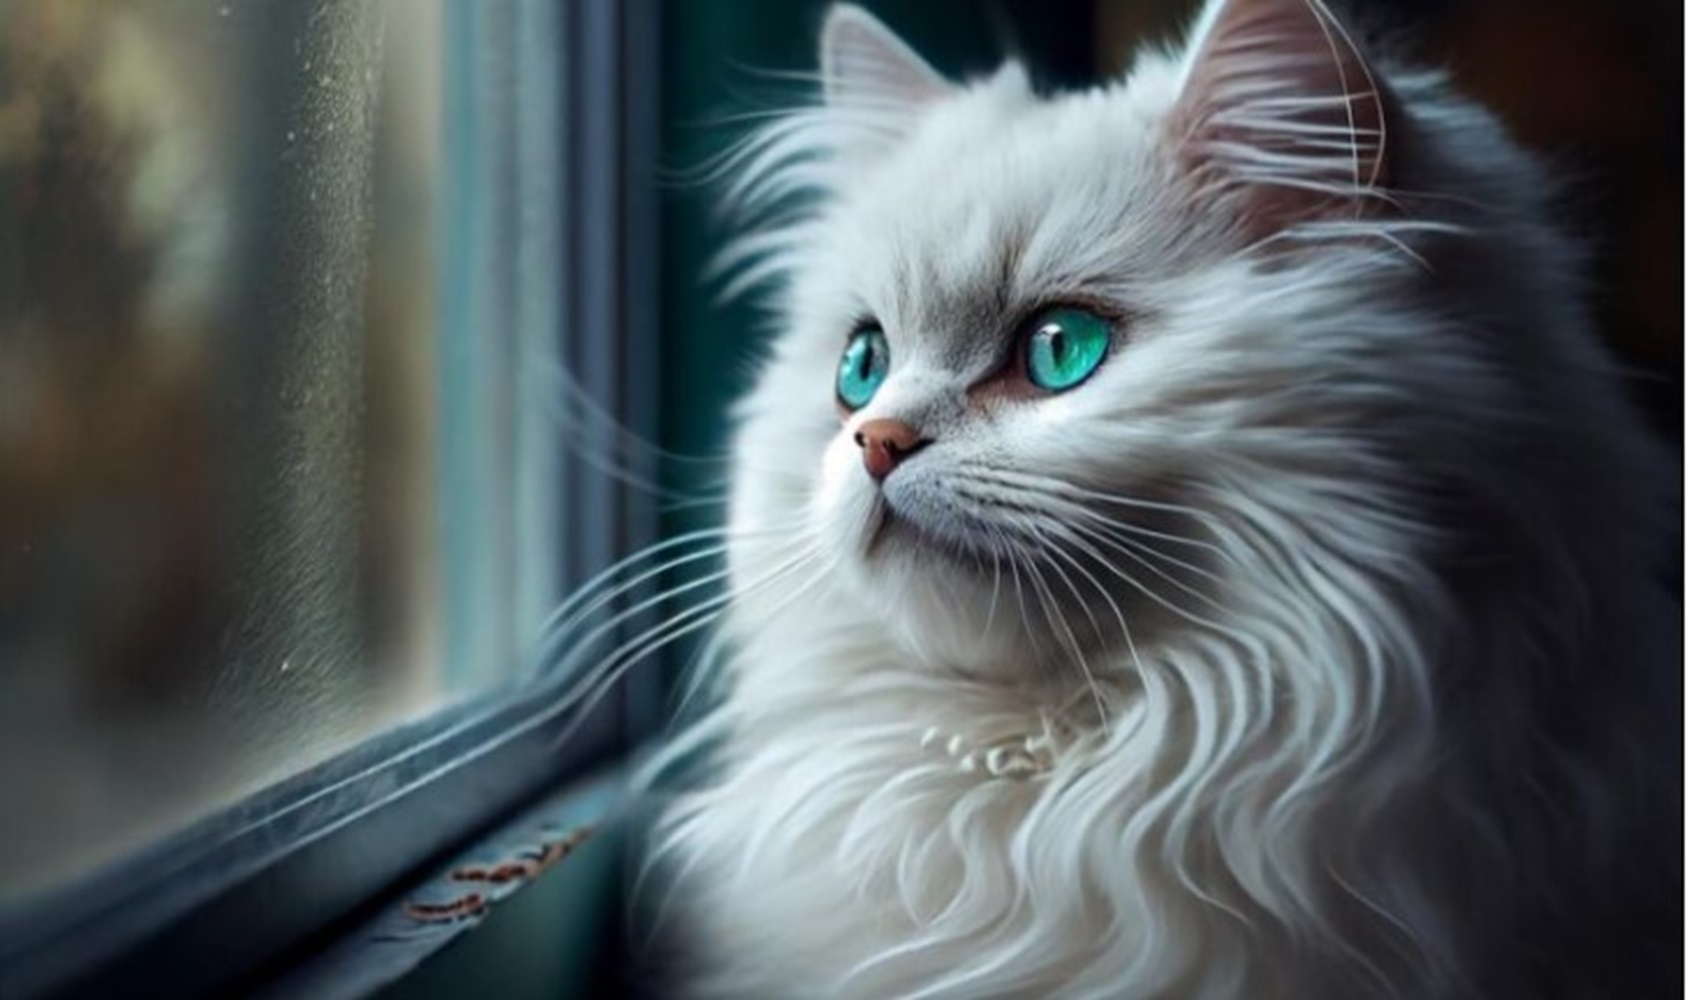 Hewan Unik, Ini 7 Ras Kucing Tercantik di Dunia, Ada Russian Blue dengan Bola Mata Hijau Zamrud